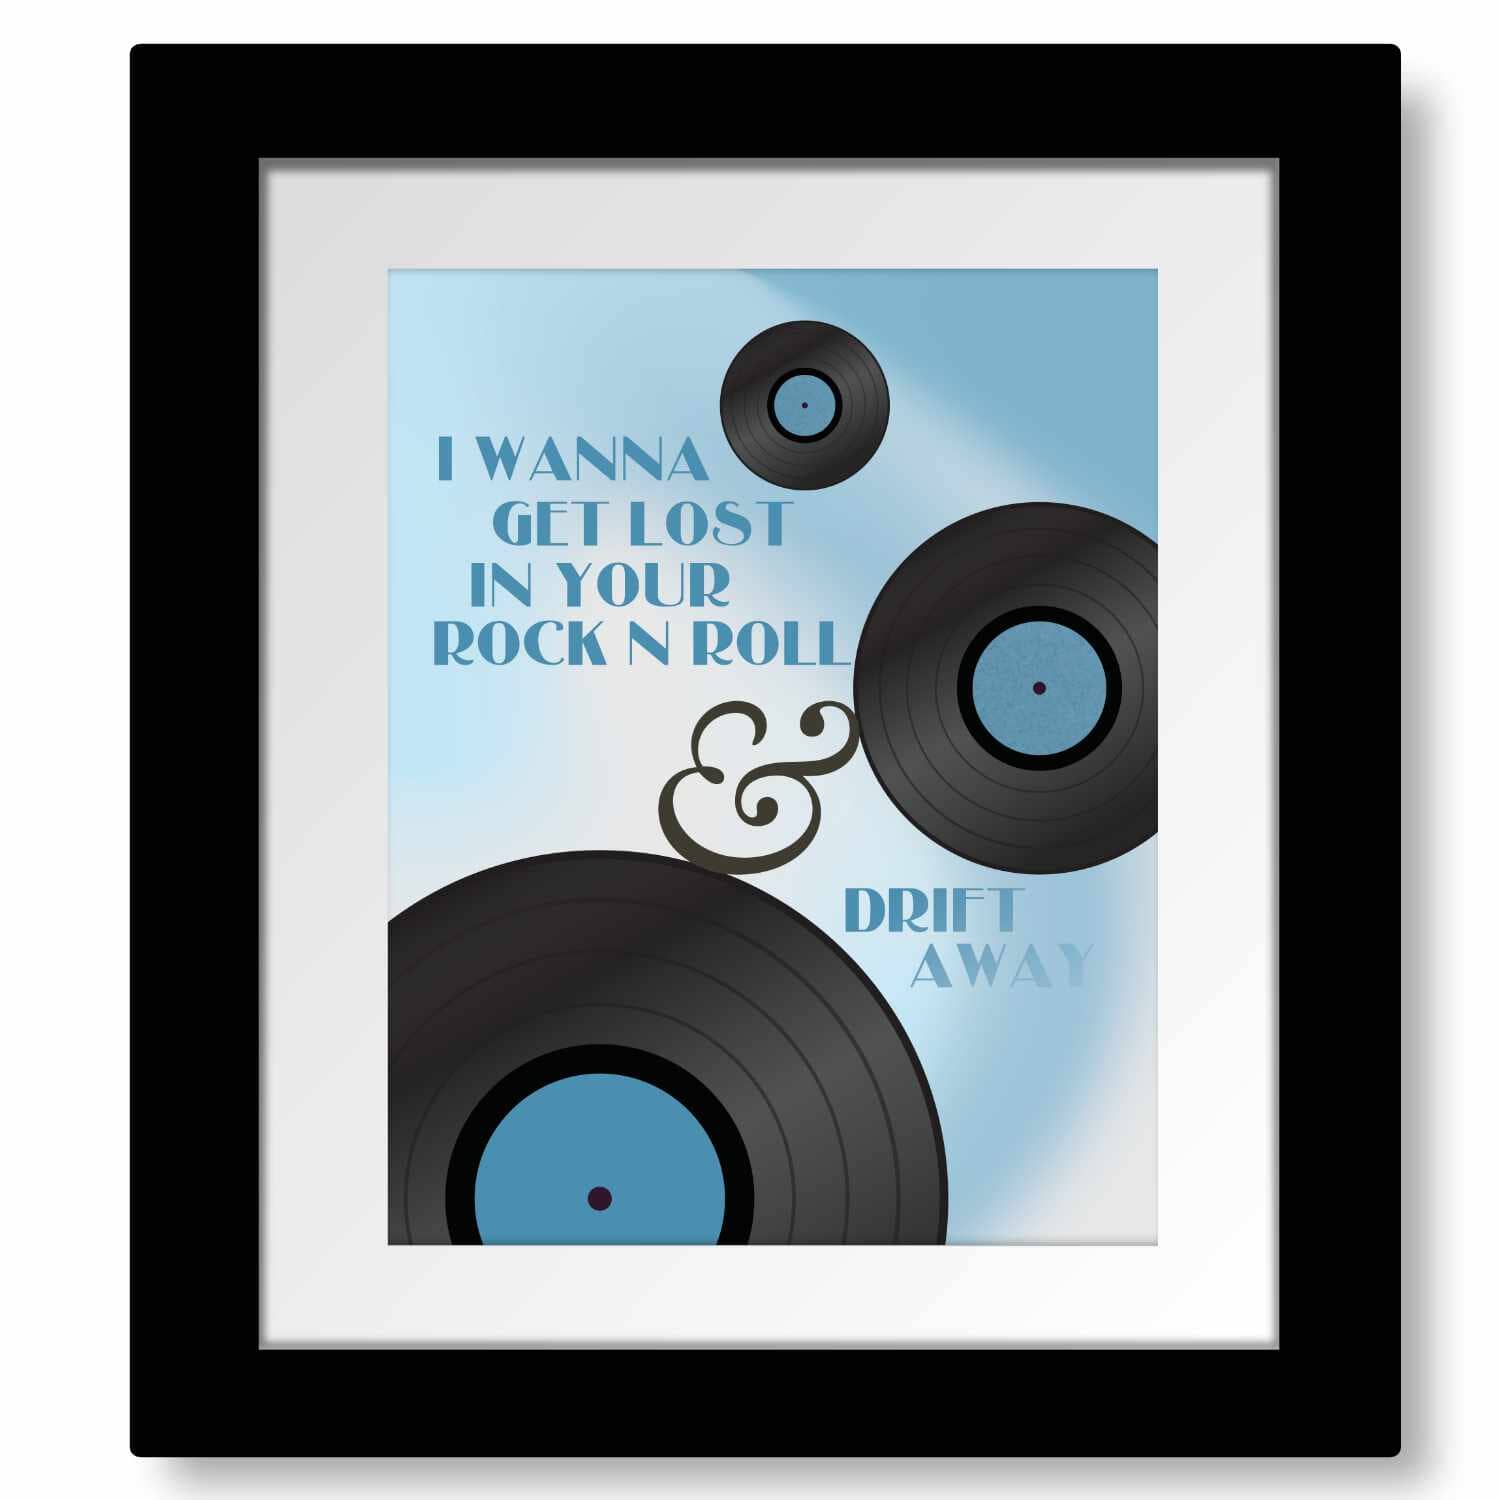 Drift Away by Dobie Gray - 70s Music Lyric Art Wall Print Song Lyrics Art Song Lyrics Art 8x10 Matted and Framed Print 